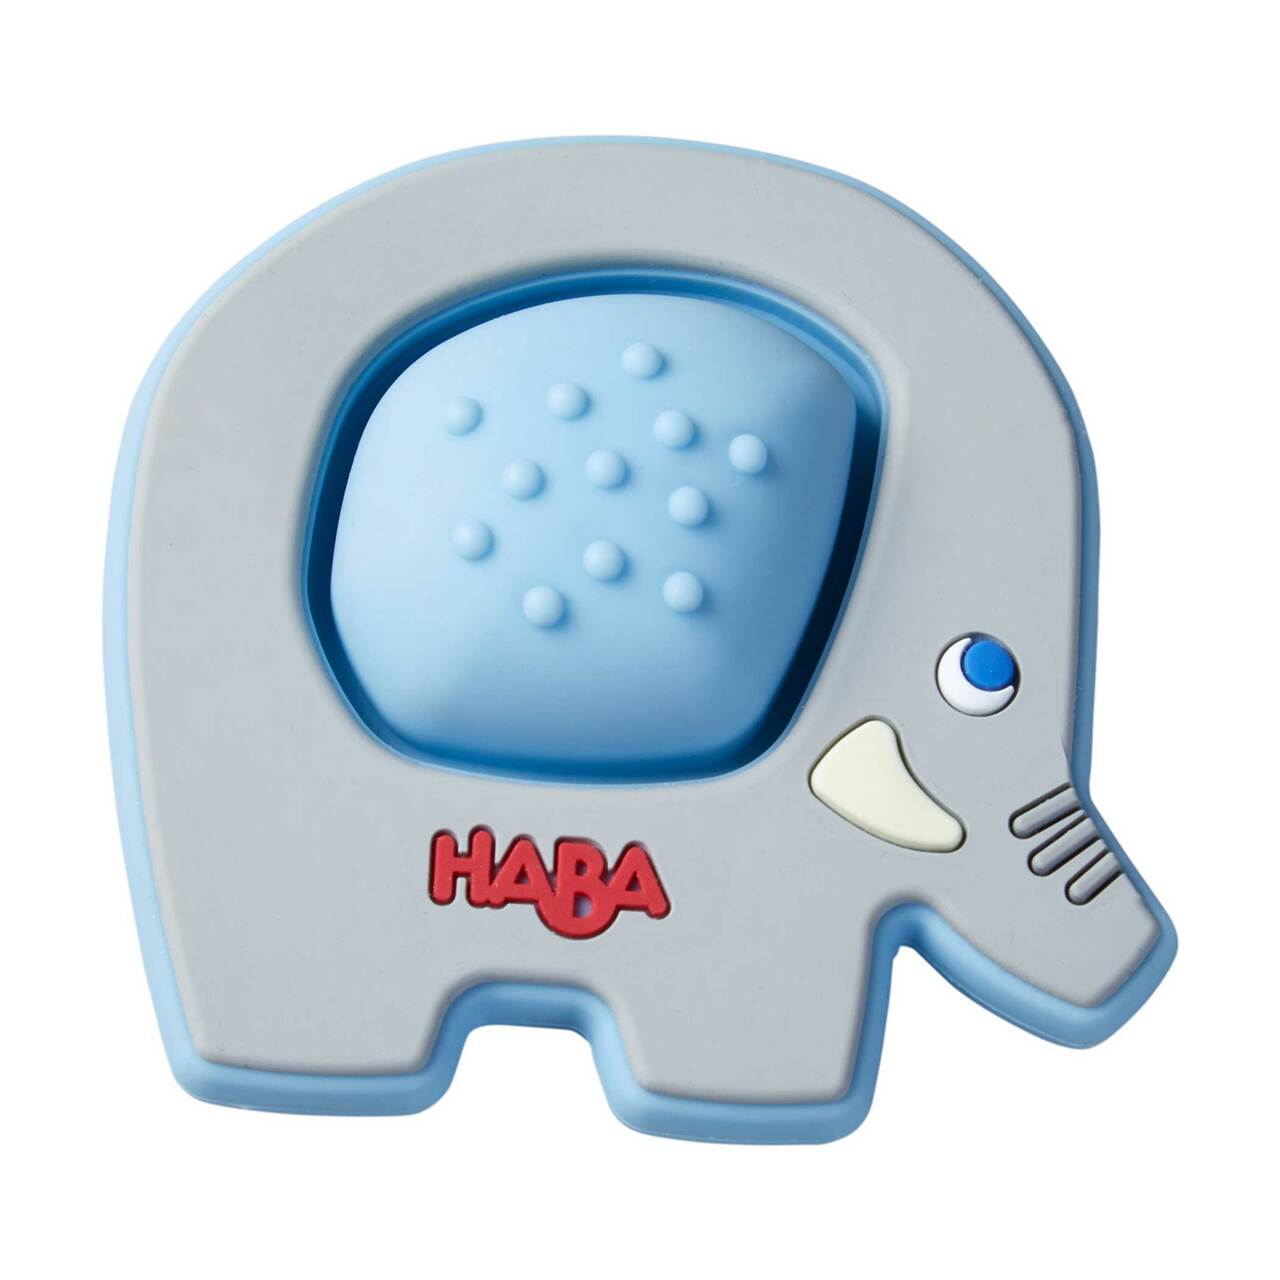 Haba-Popping Elephant Silicone Teething Toy-305834-Legacy Toys